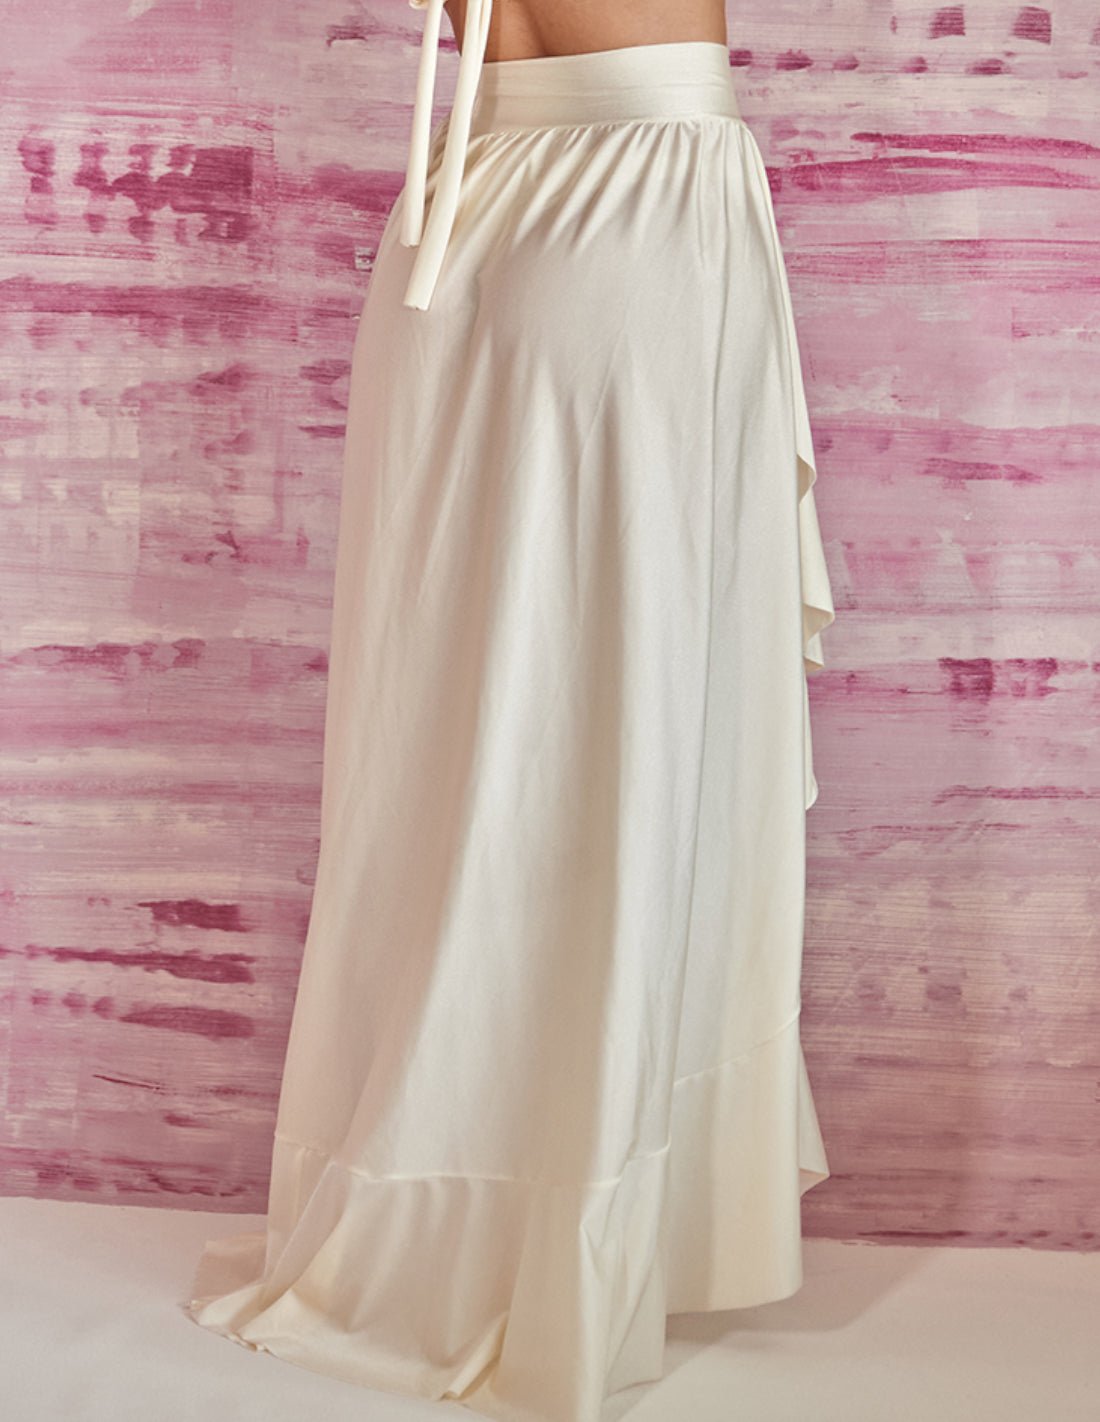 Caracol Skirt Ivory - Skirt - Entreaguas Wearable Art